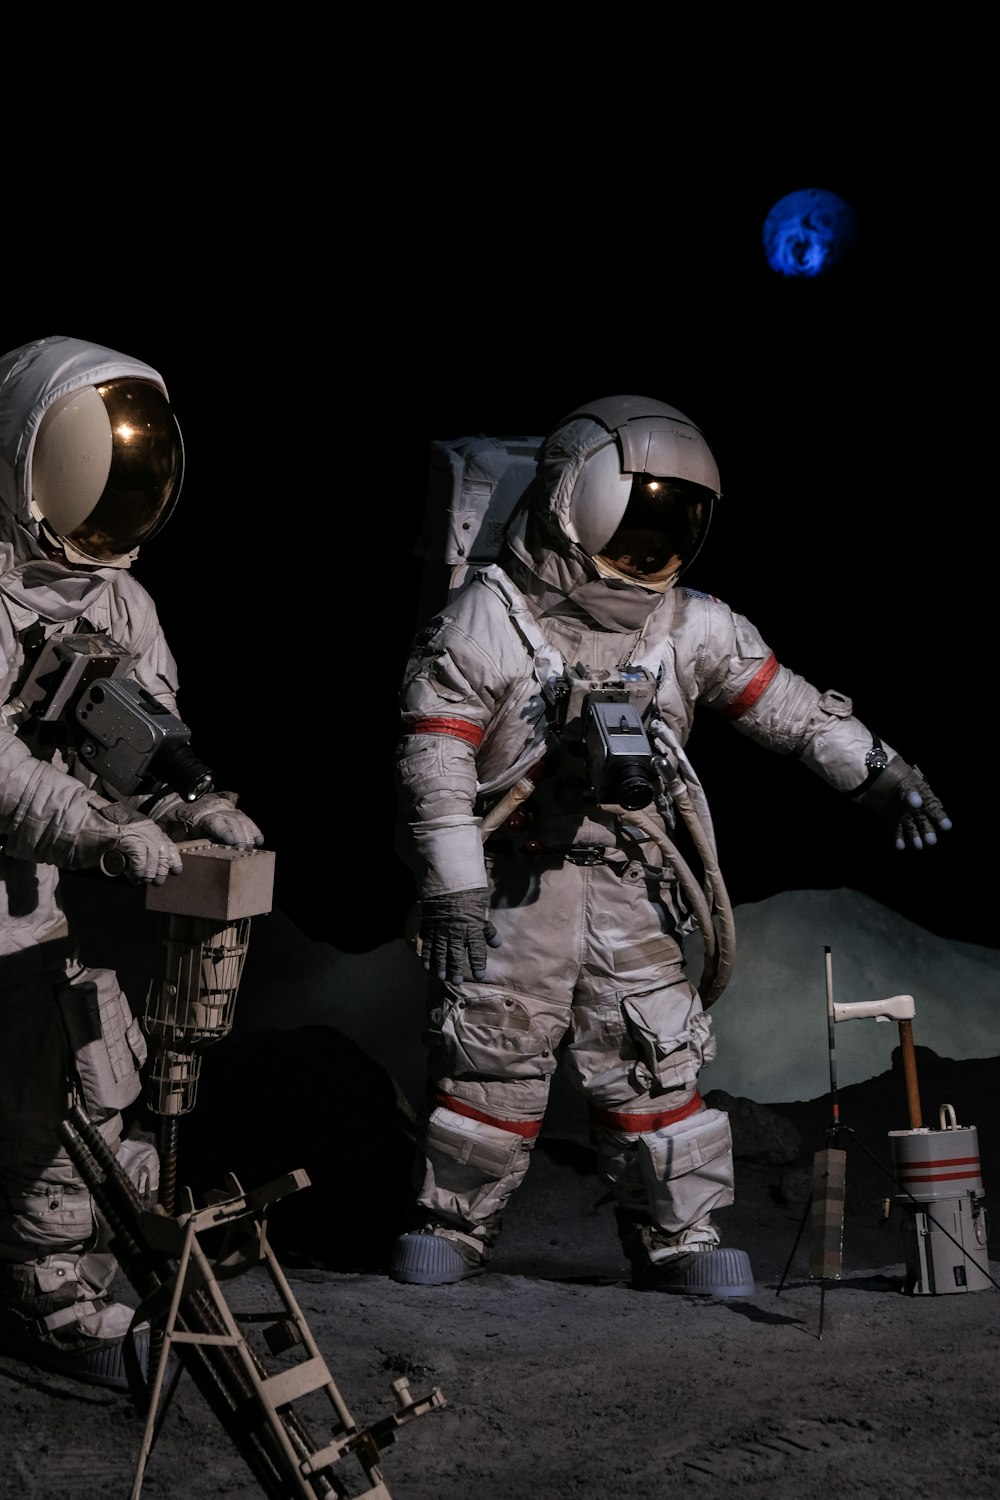 Zwei Astronauten auf der Mondoberfläche